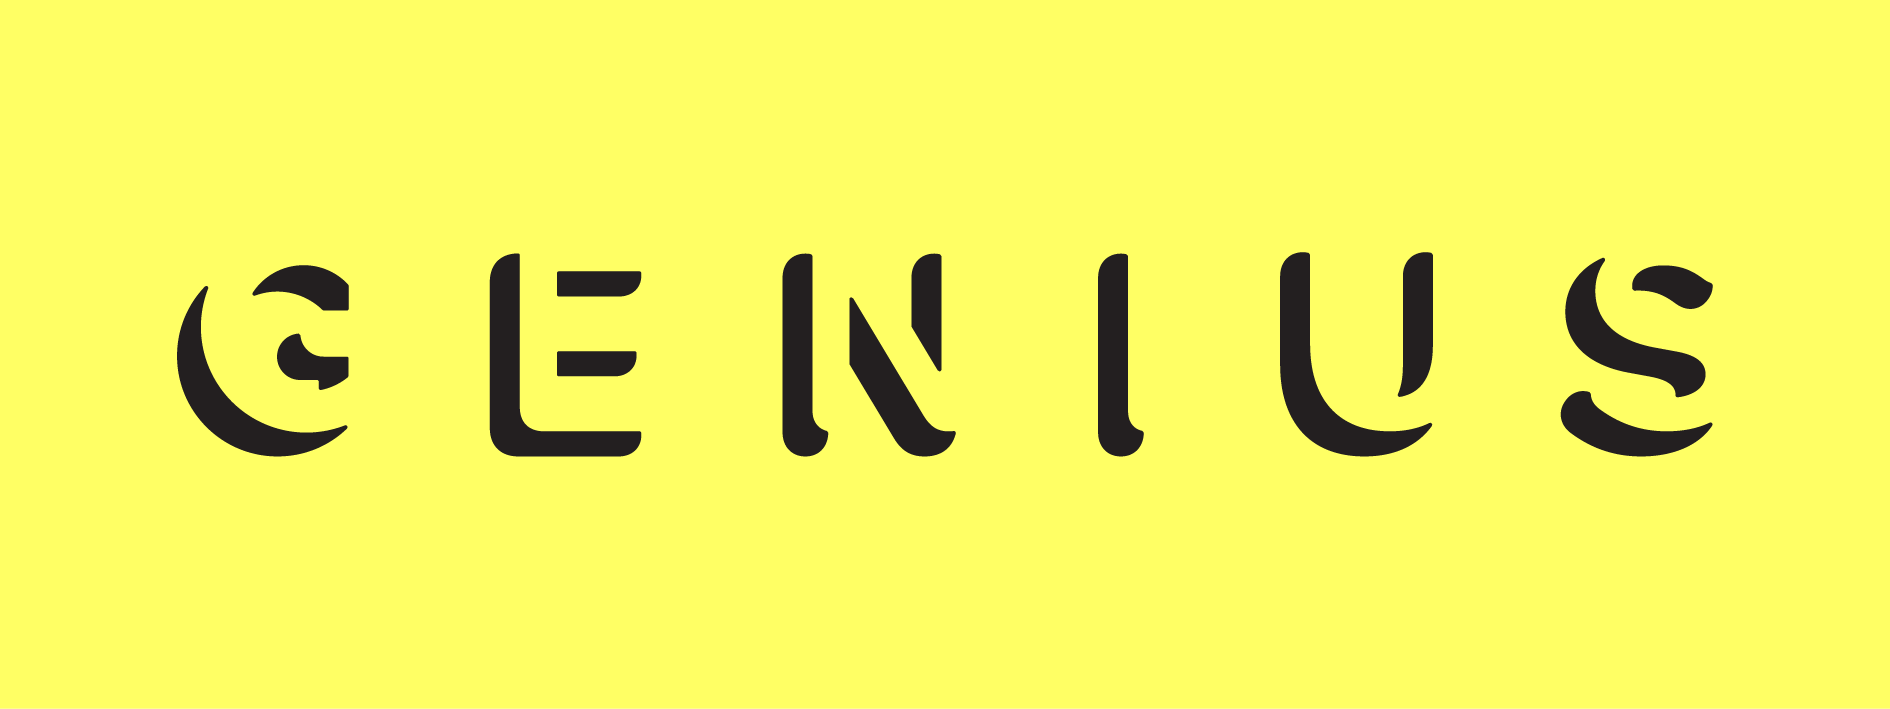 File:Genius.com logo yellow.png.